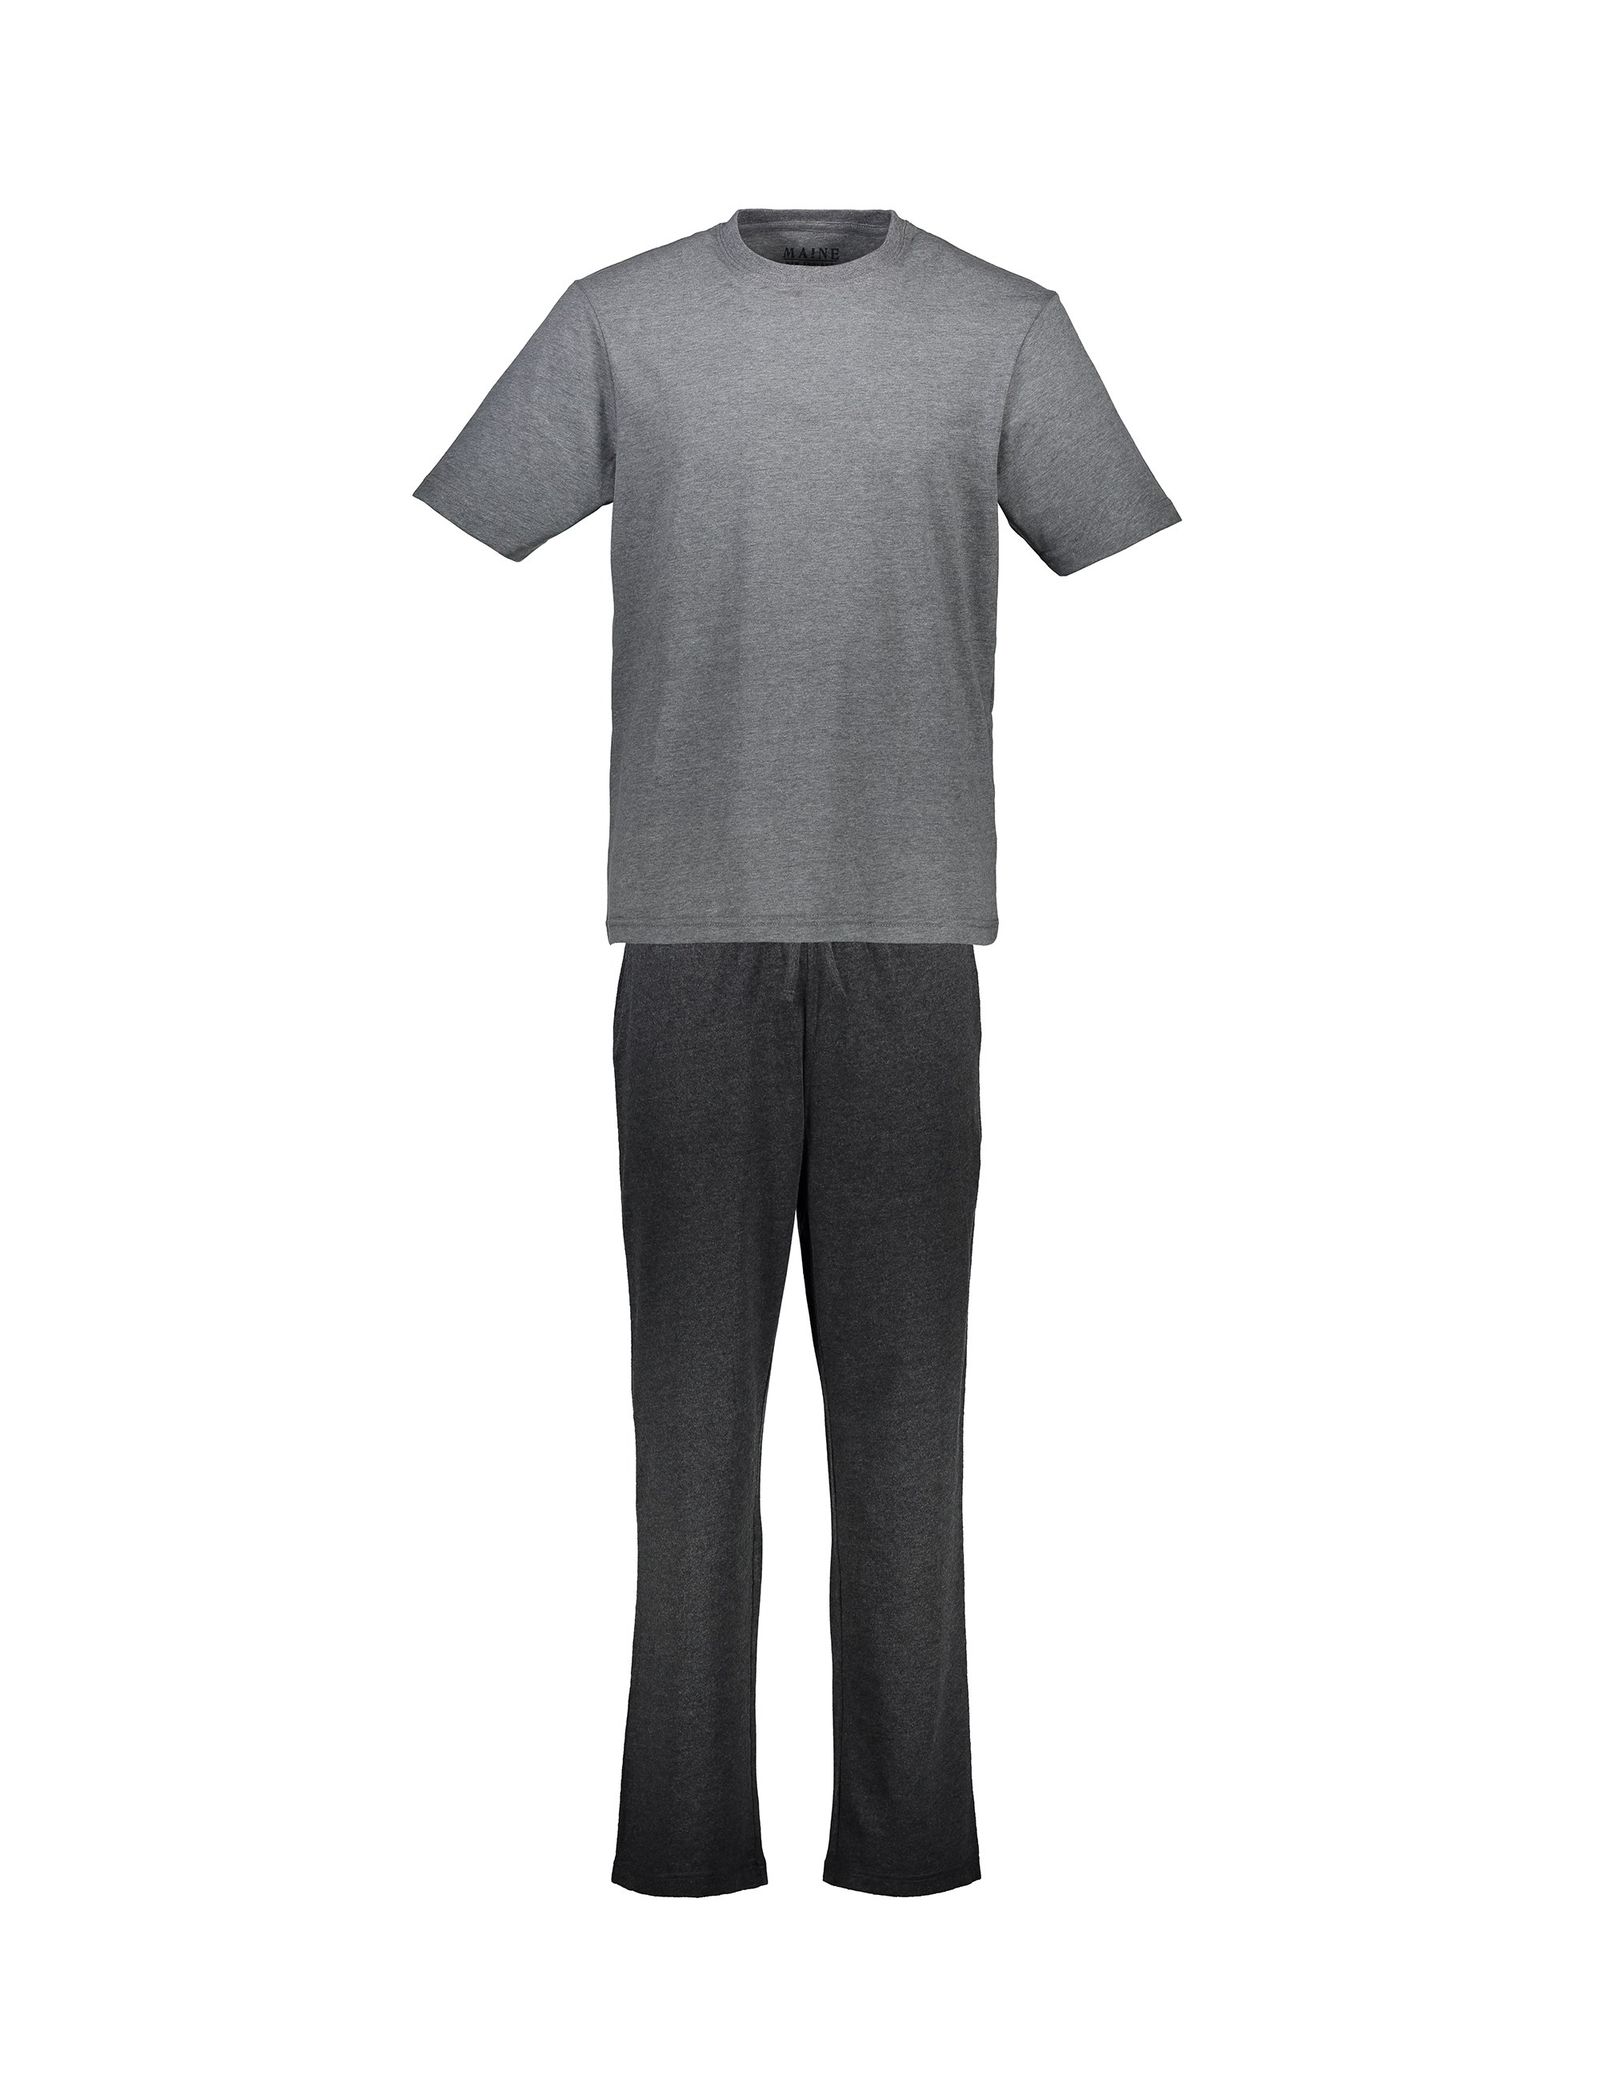 تی شرت و شلوار راحتی نخی مردانه - مین نیو اینگلند - طوسي - 1